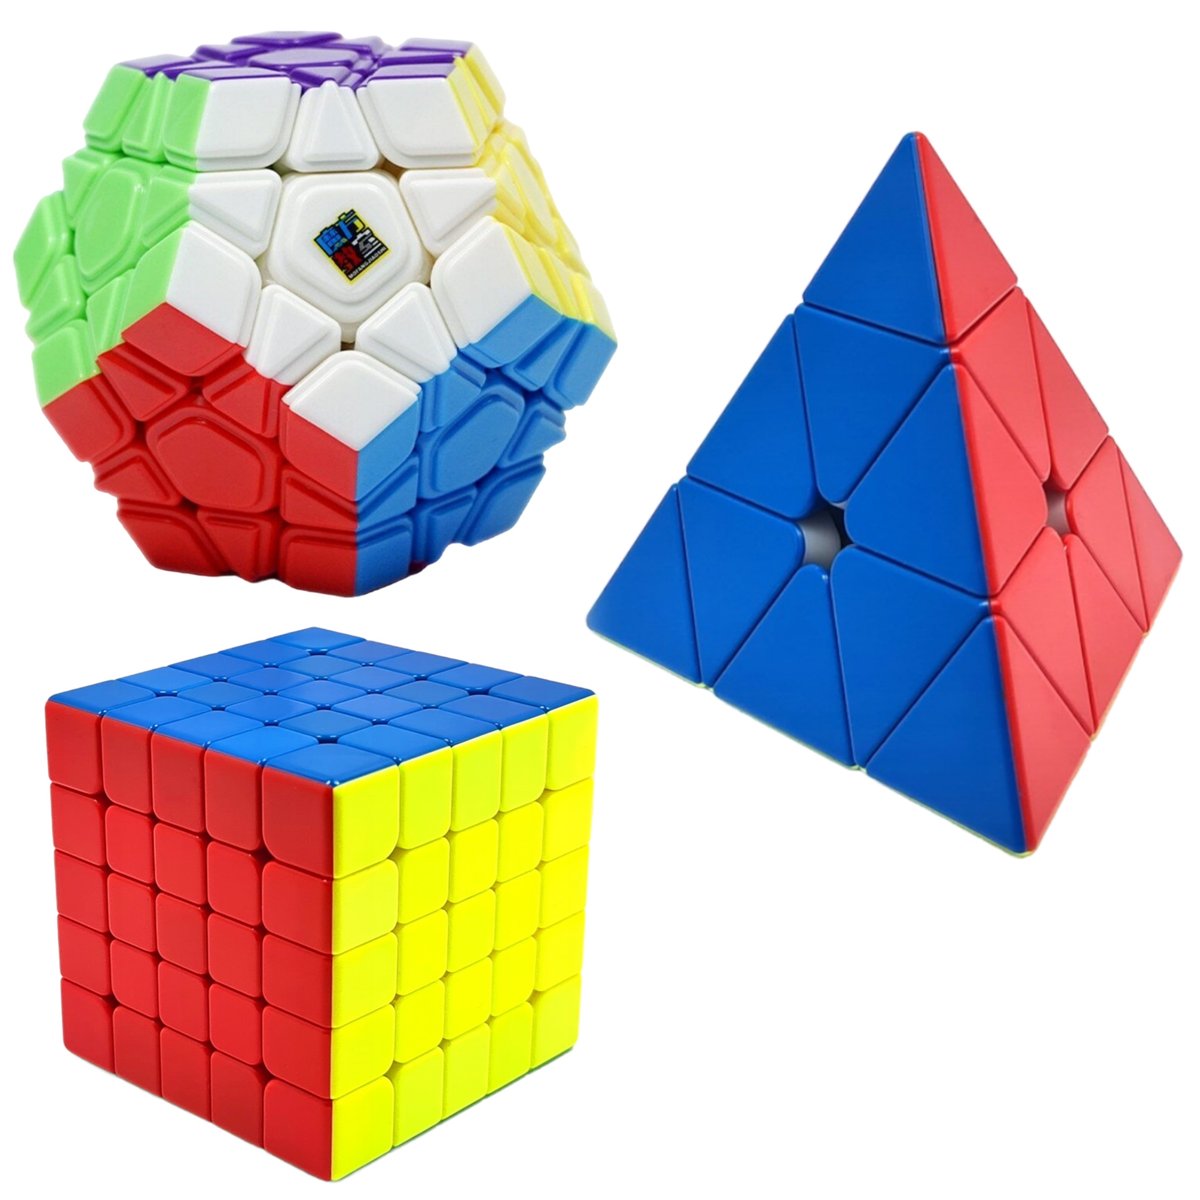 Zestaw Kostka Rubika 5x5 + Piramida + Megaminx MoYu